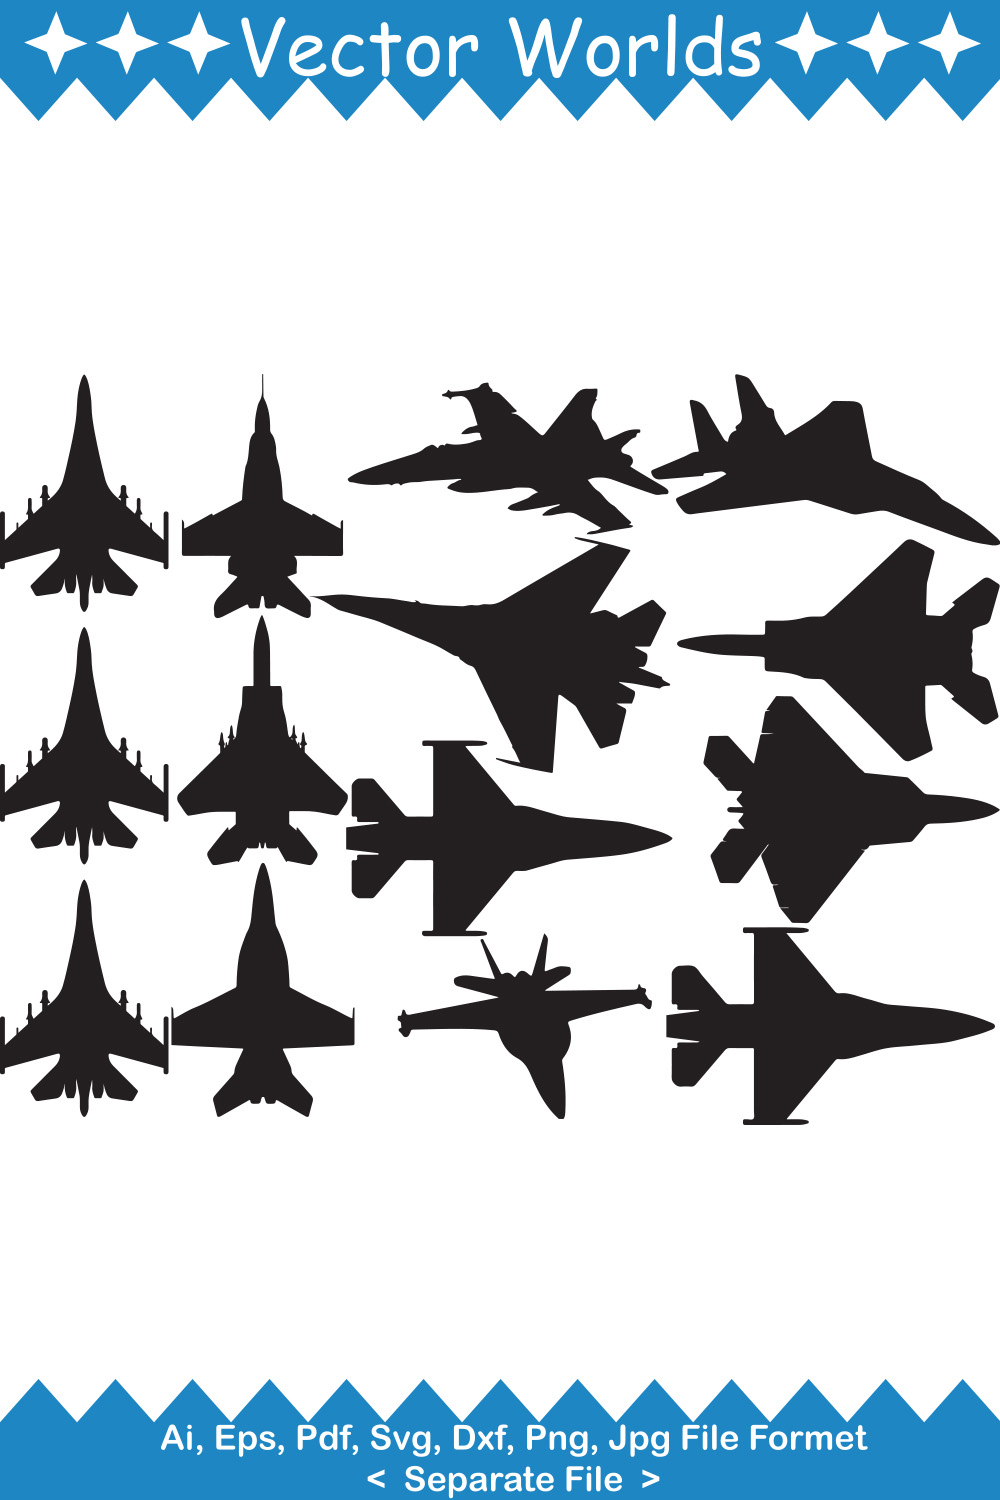 Fighter Plane SVG Vector Design pinterest image.